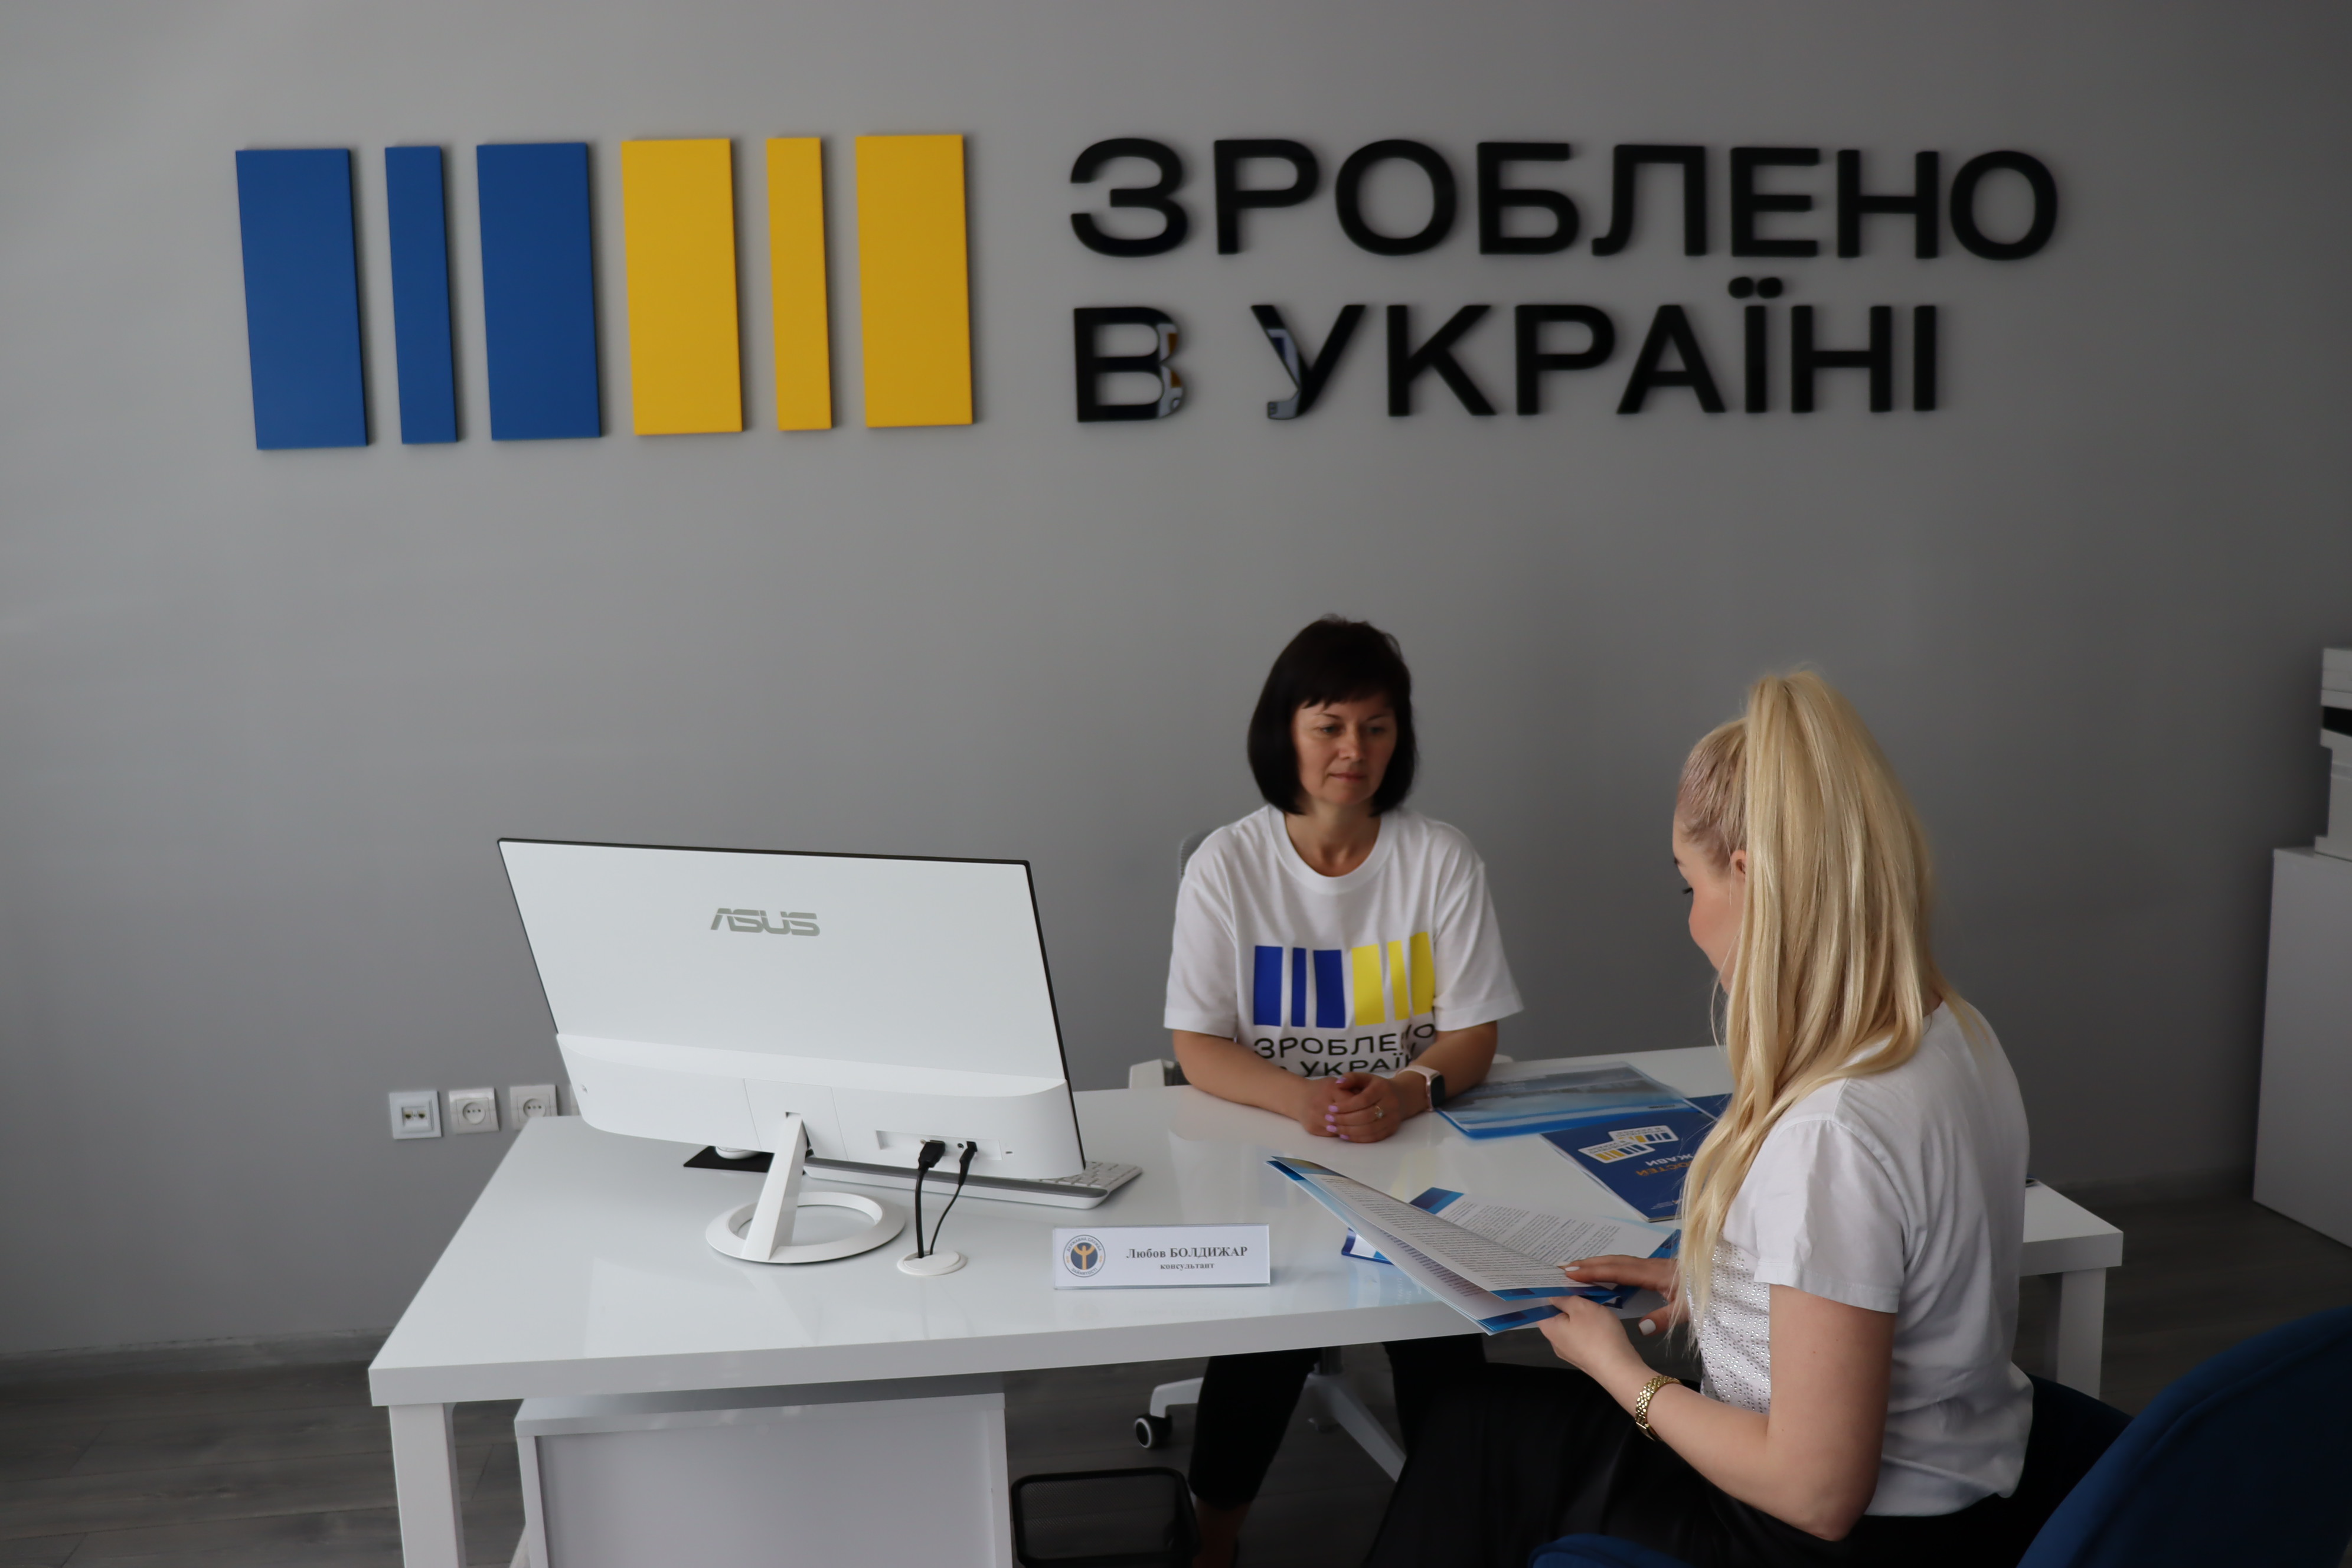 В Ужгороді відкрився офіс для підтримки бізнесу "Зроблено в Україні" (ФОТО)